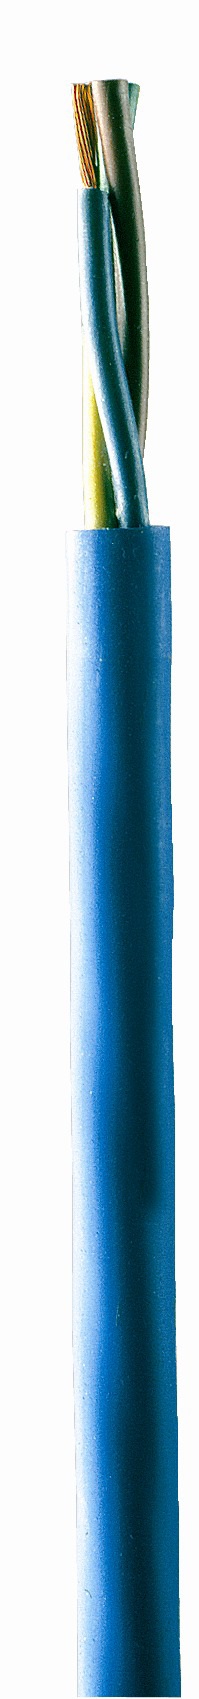 EBARA Unterwasserkabel für Brunnenpumpen 3 x 1,5mm²